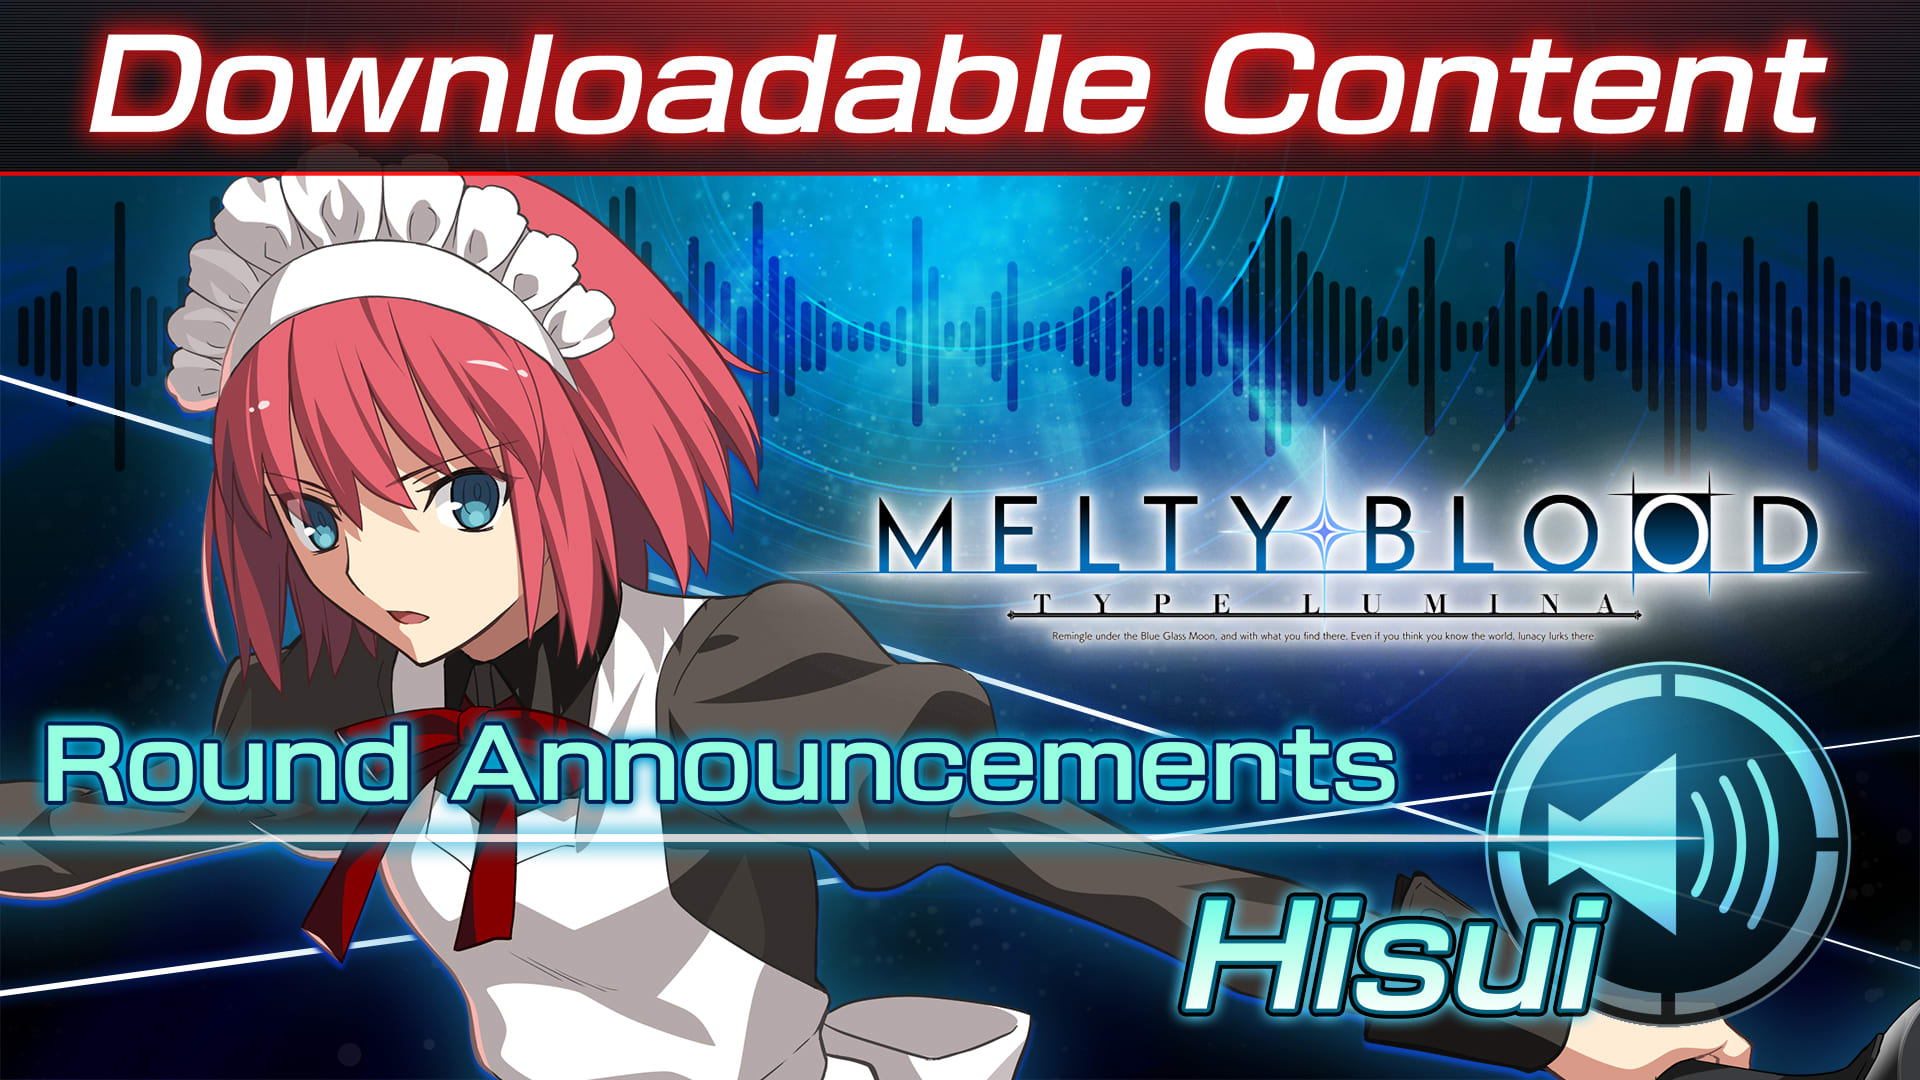 Contenido adicional: "Hisui Round Announcements"